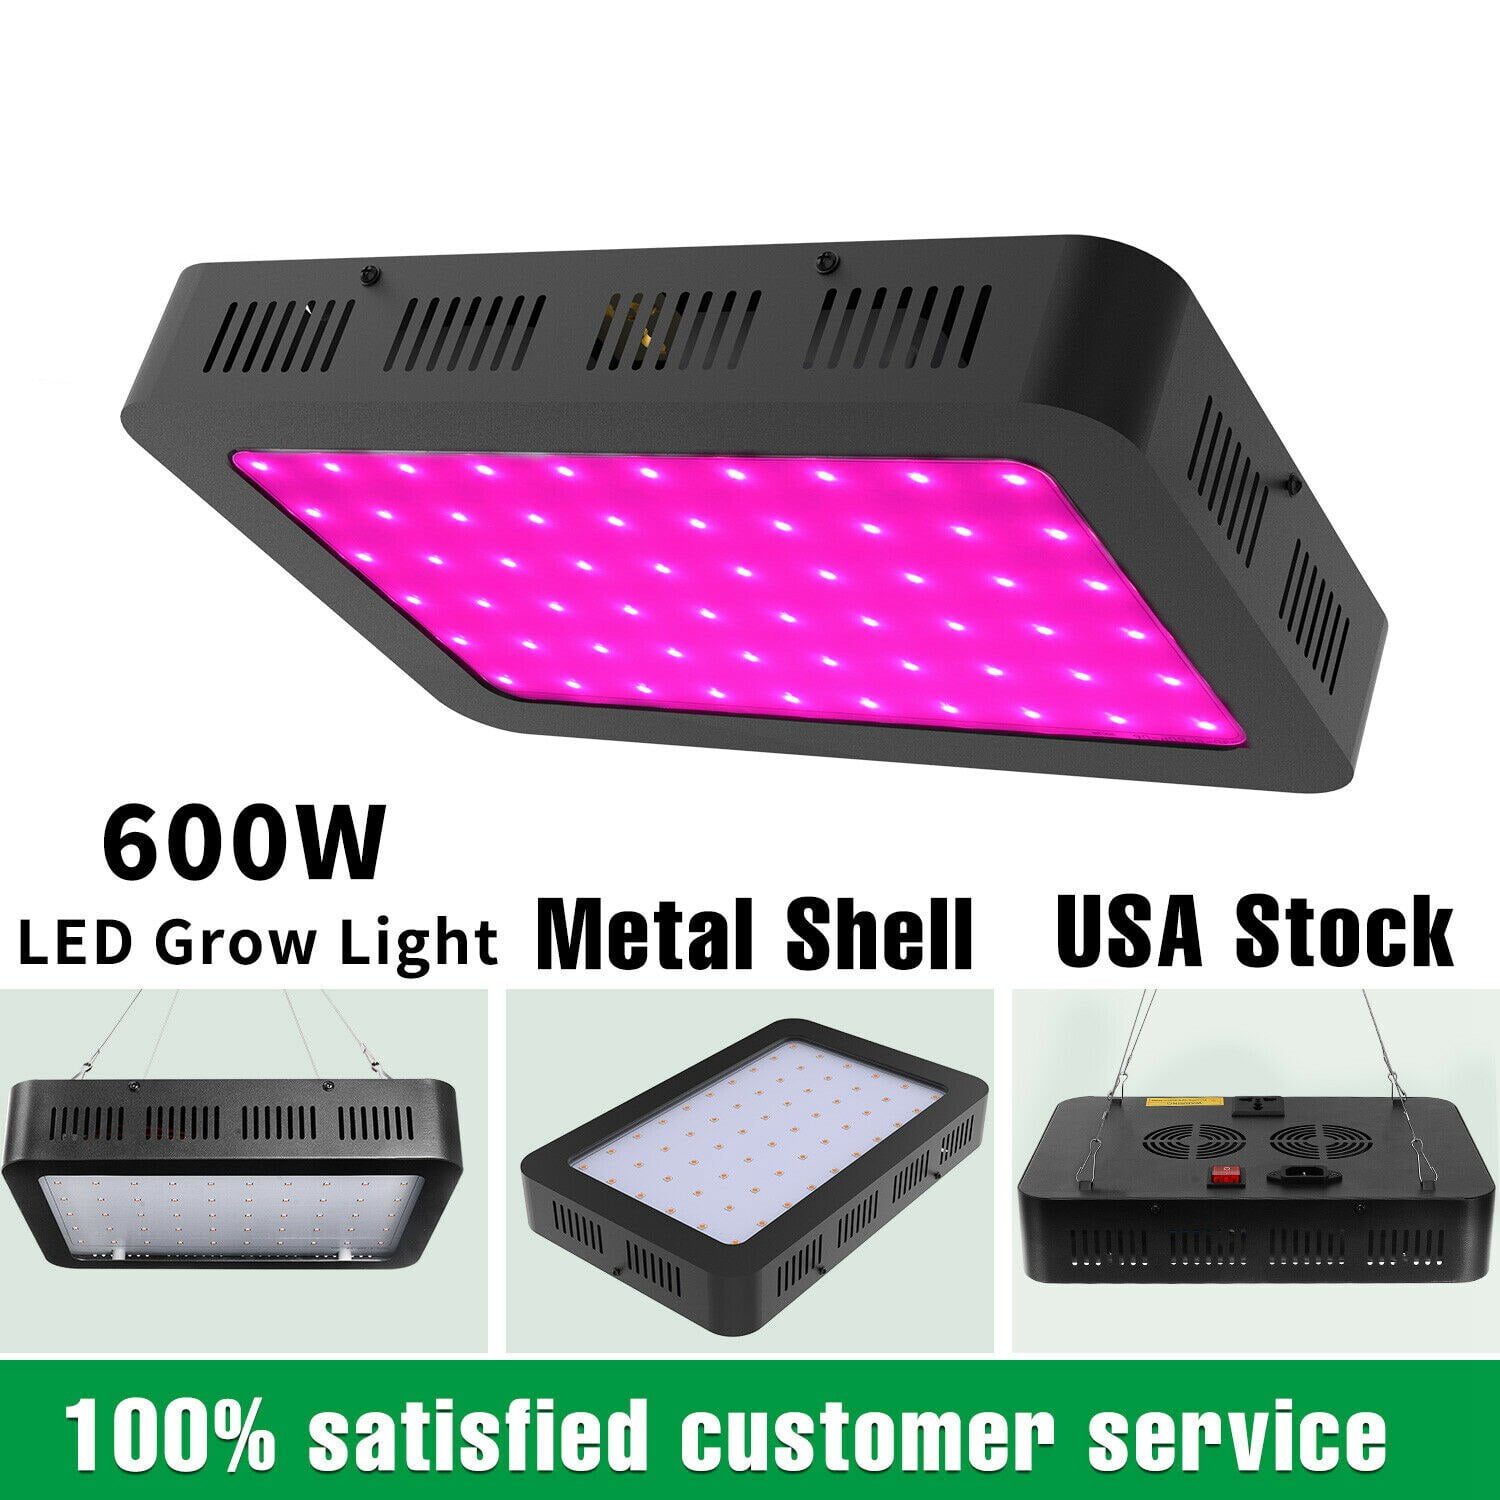 600 Watt LED Grow Lights for Seed Starting Full Spectrum Growing Lights New 